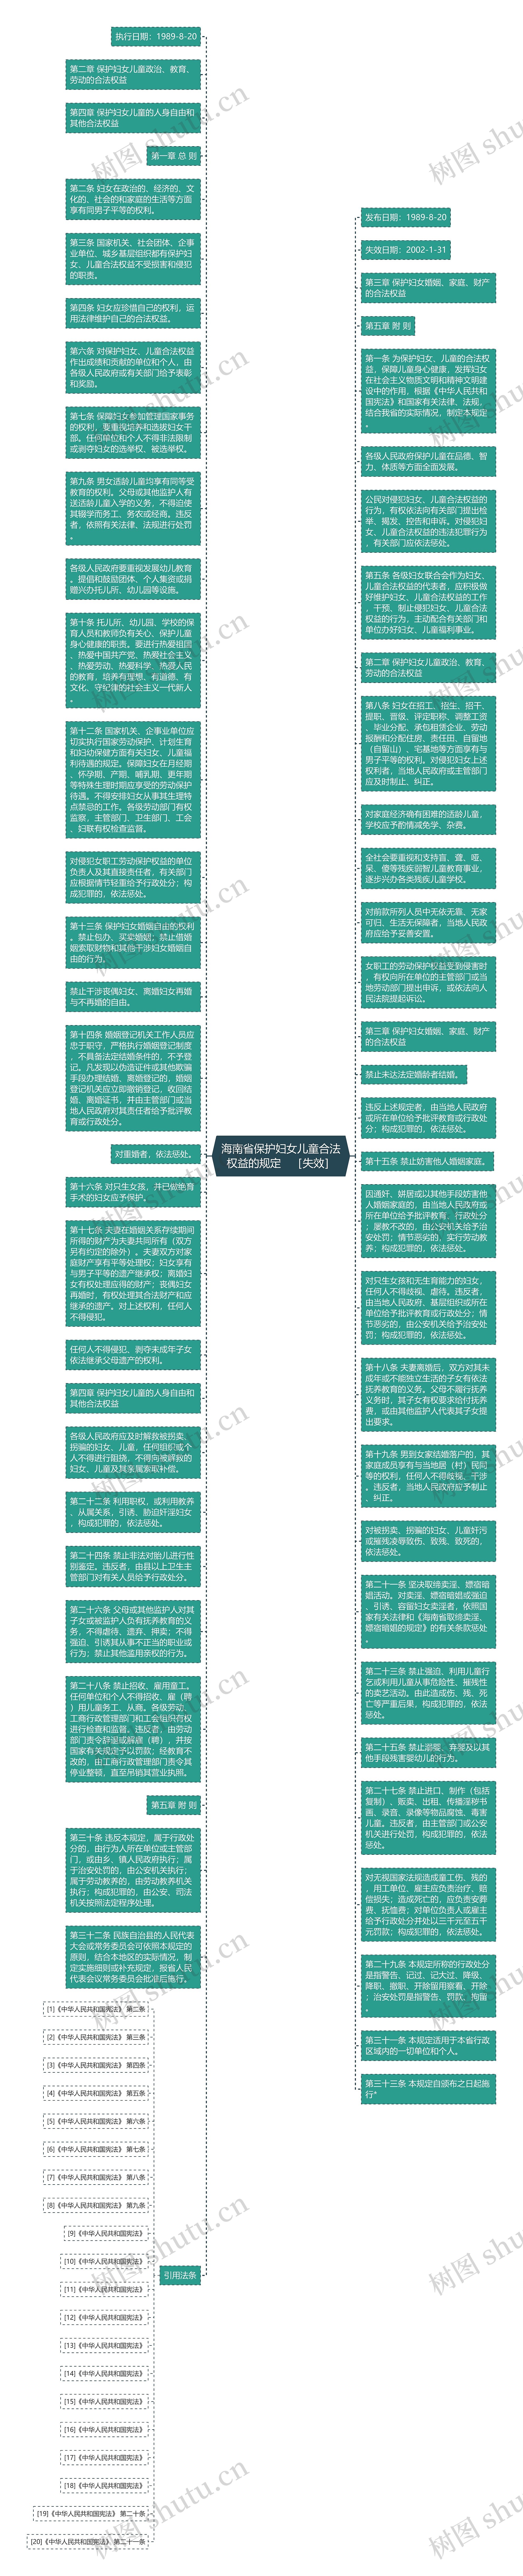 海南省保护妇女儿童合法权益的规定　［失效］思维导图